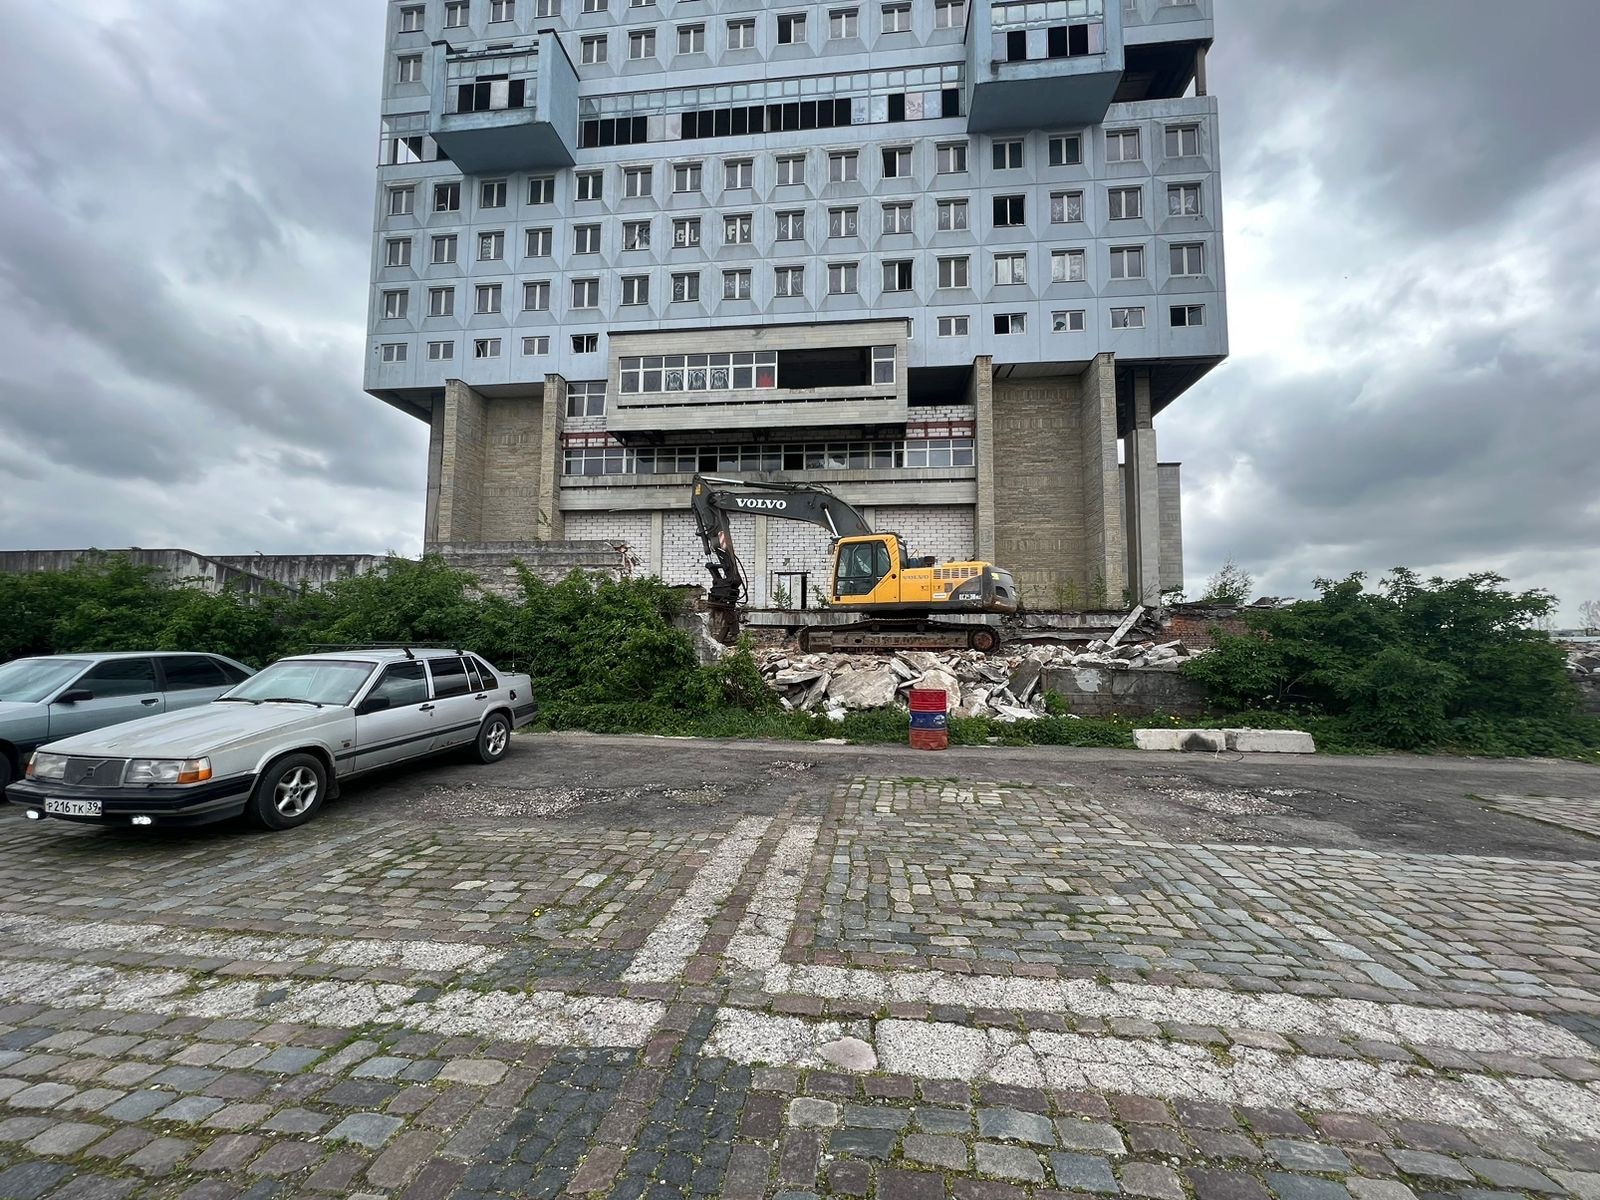 В Калининграде стартовал демонтаж известного недостроя в регионе - Дома Советов